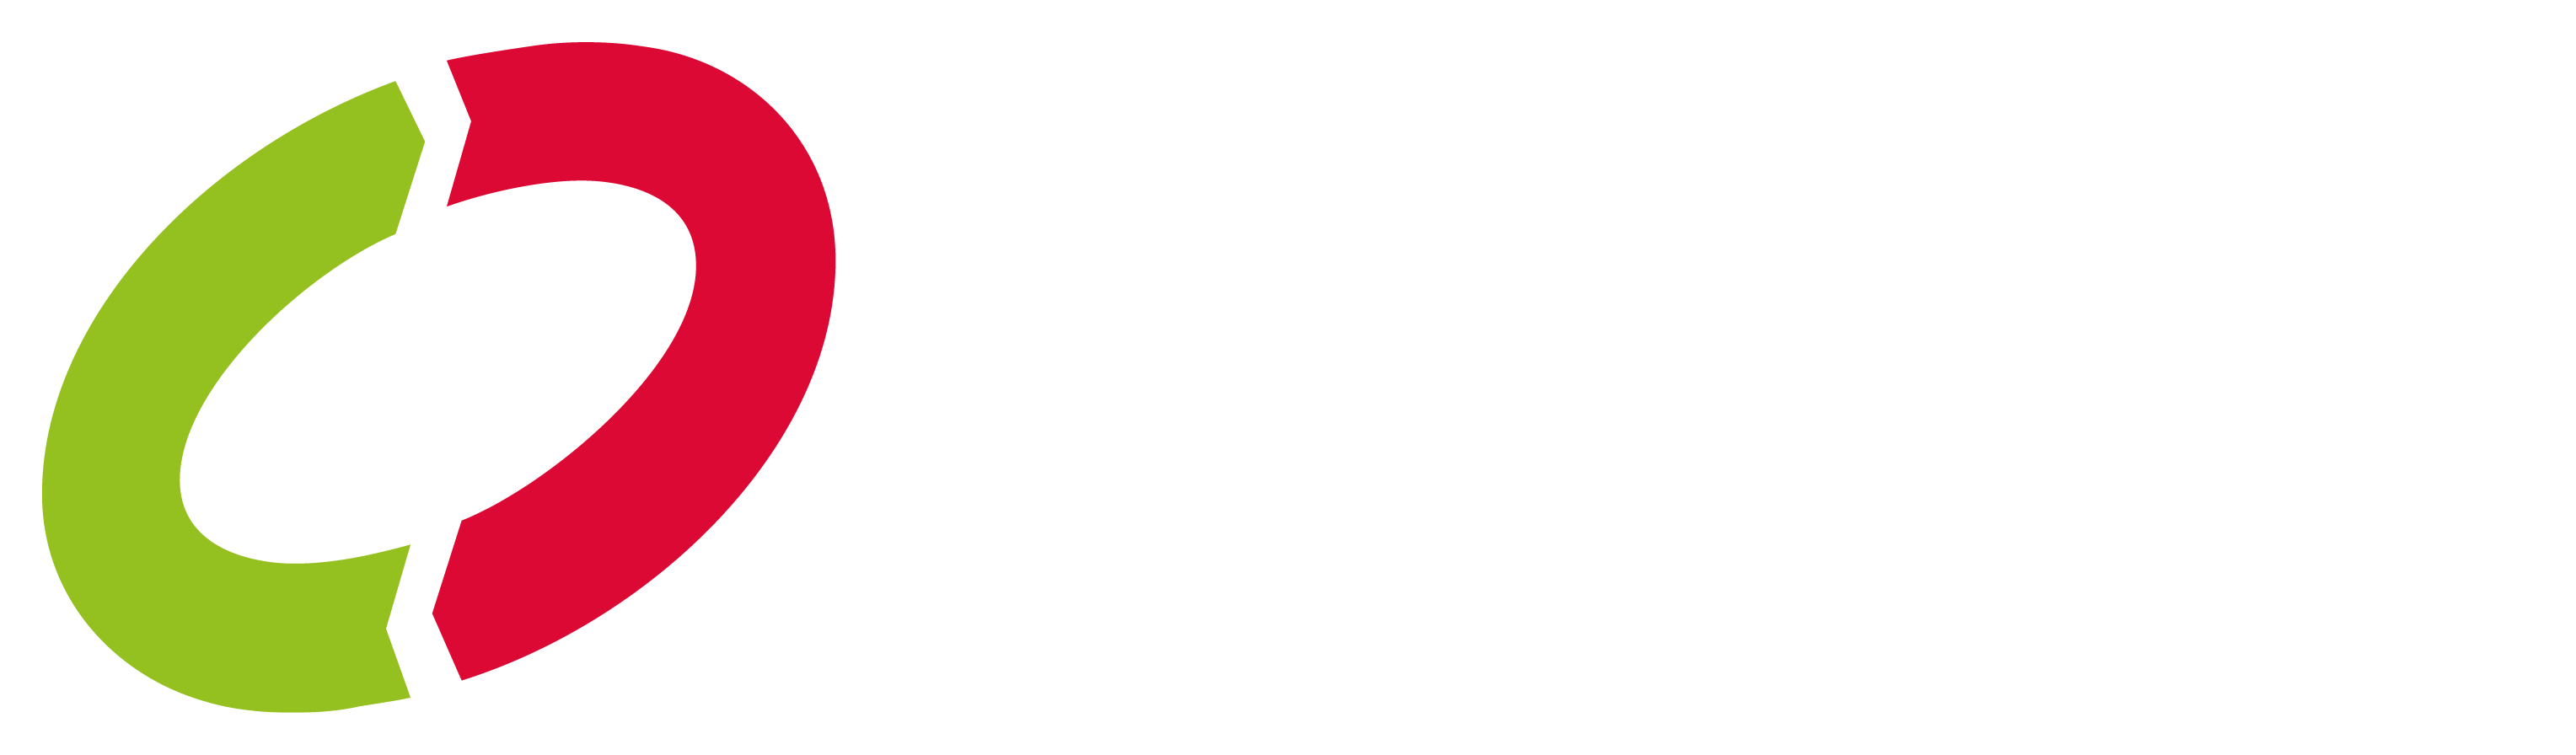 Clancy logo